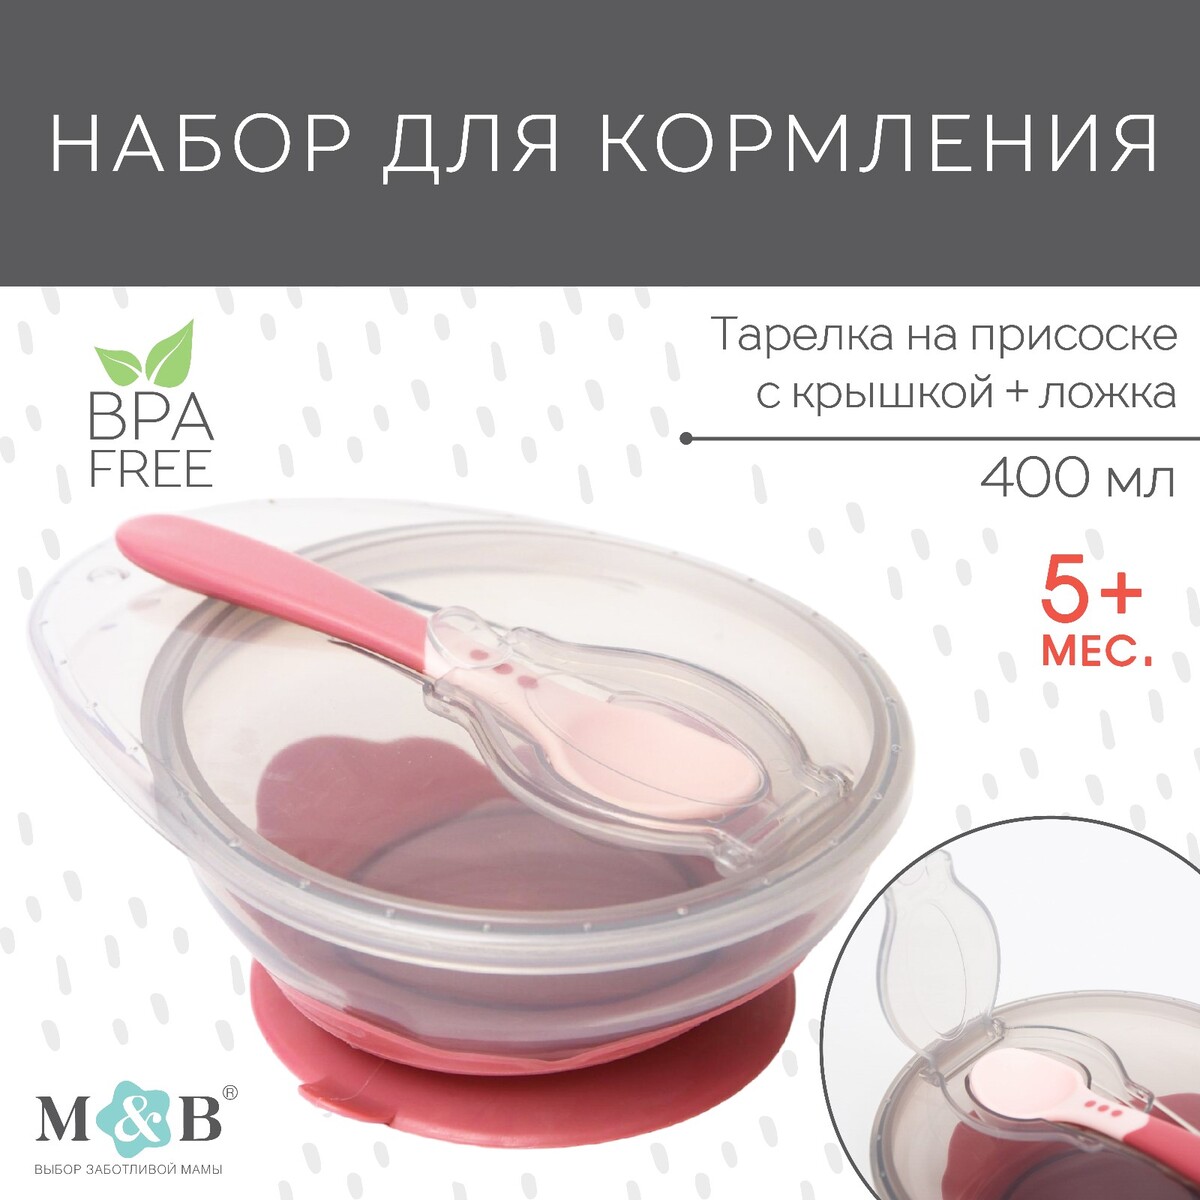 Набор для кормления: миска на присоске, с крышкой + ложка, цвет розовый, 400 мл. набор для кормления нагрудник тарелка на присоске ложка m